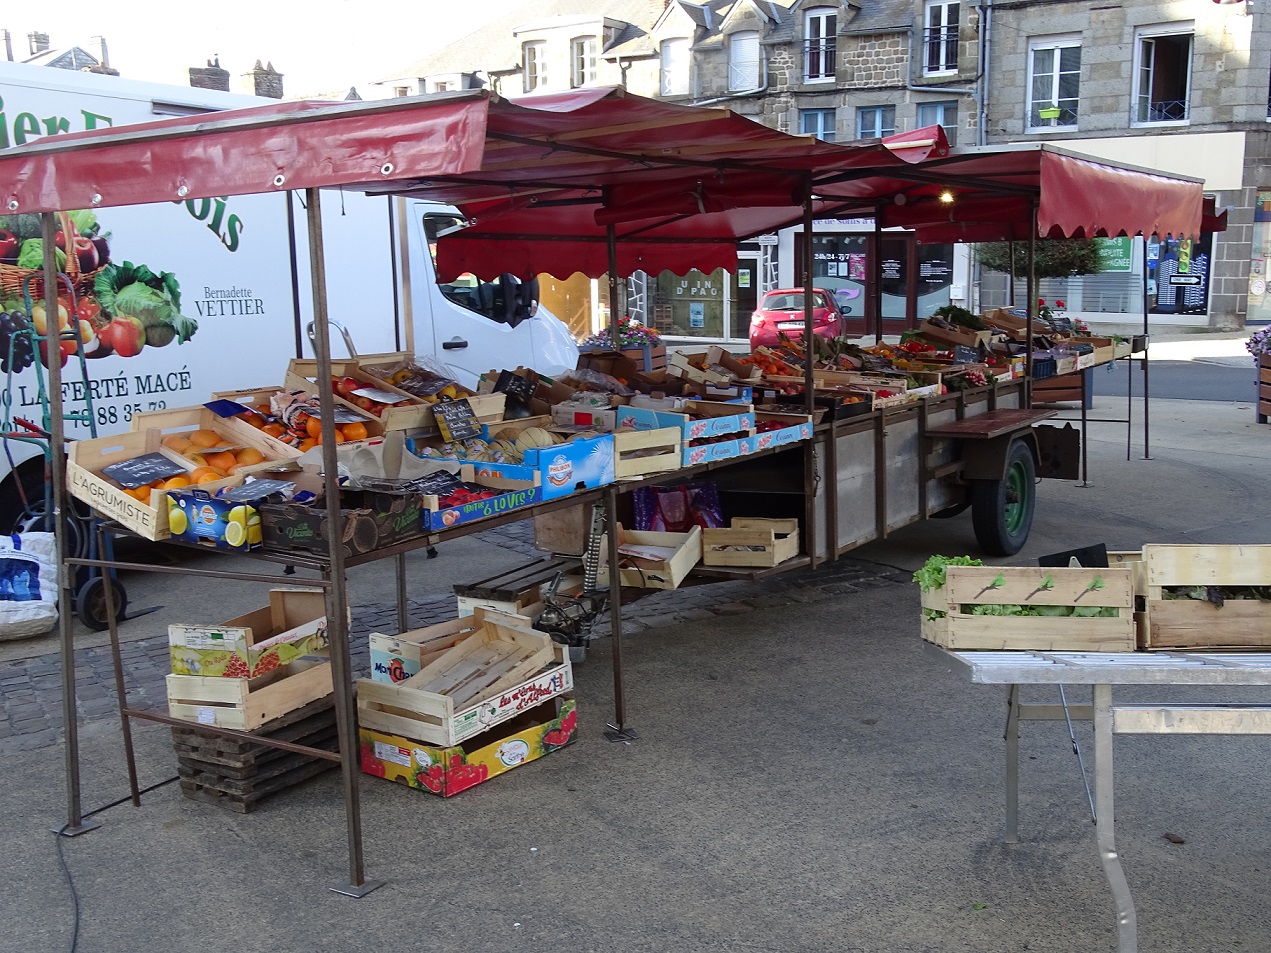 A vendre matériel pour marché ambulant ( camion, remorque, frigo...)
Vente de fruits et légumes sur les marchés , 5 marchés semaine Orne et Mayenne. Plus de détails par tel